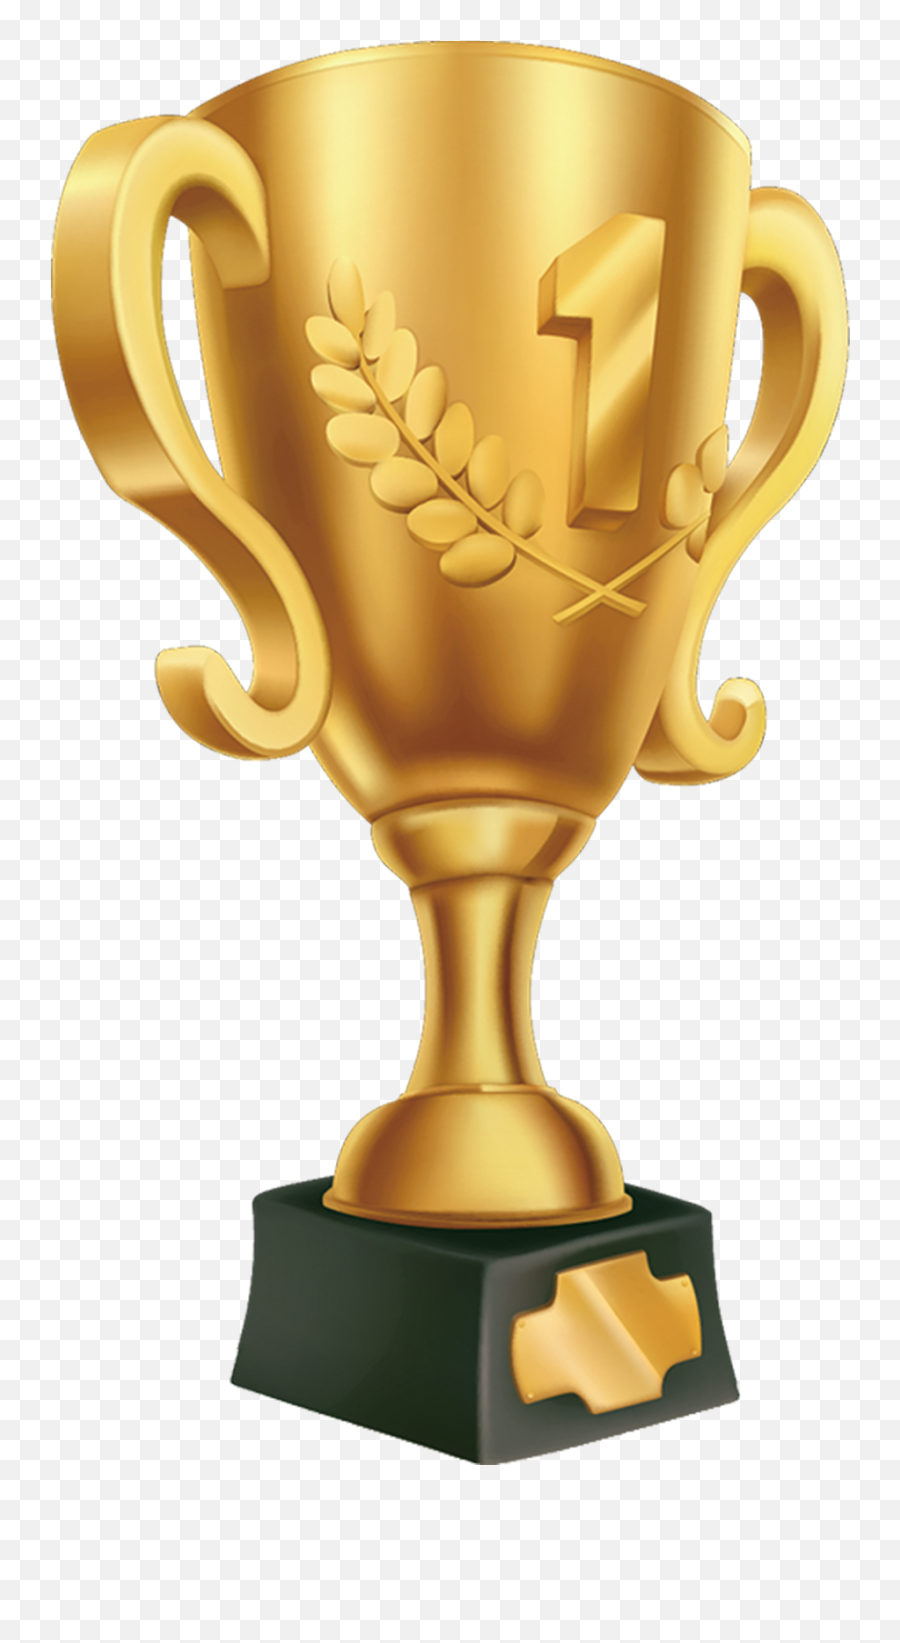 Golden Trophy Png Image Free Download Searchpngcom - Number One Trophy Png,Gold Trophy Png